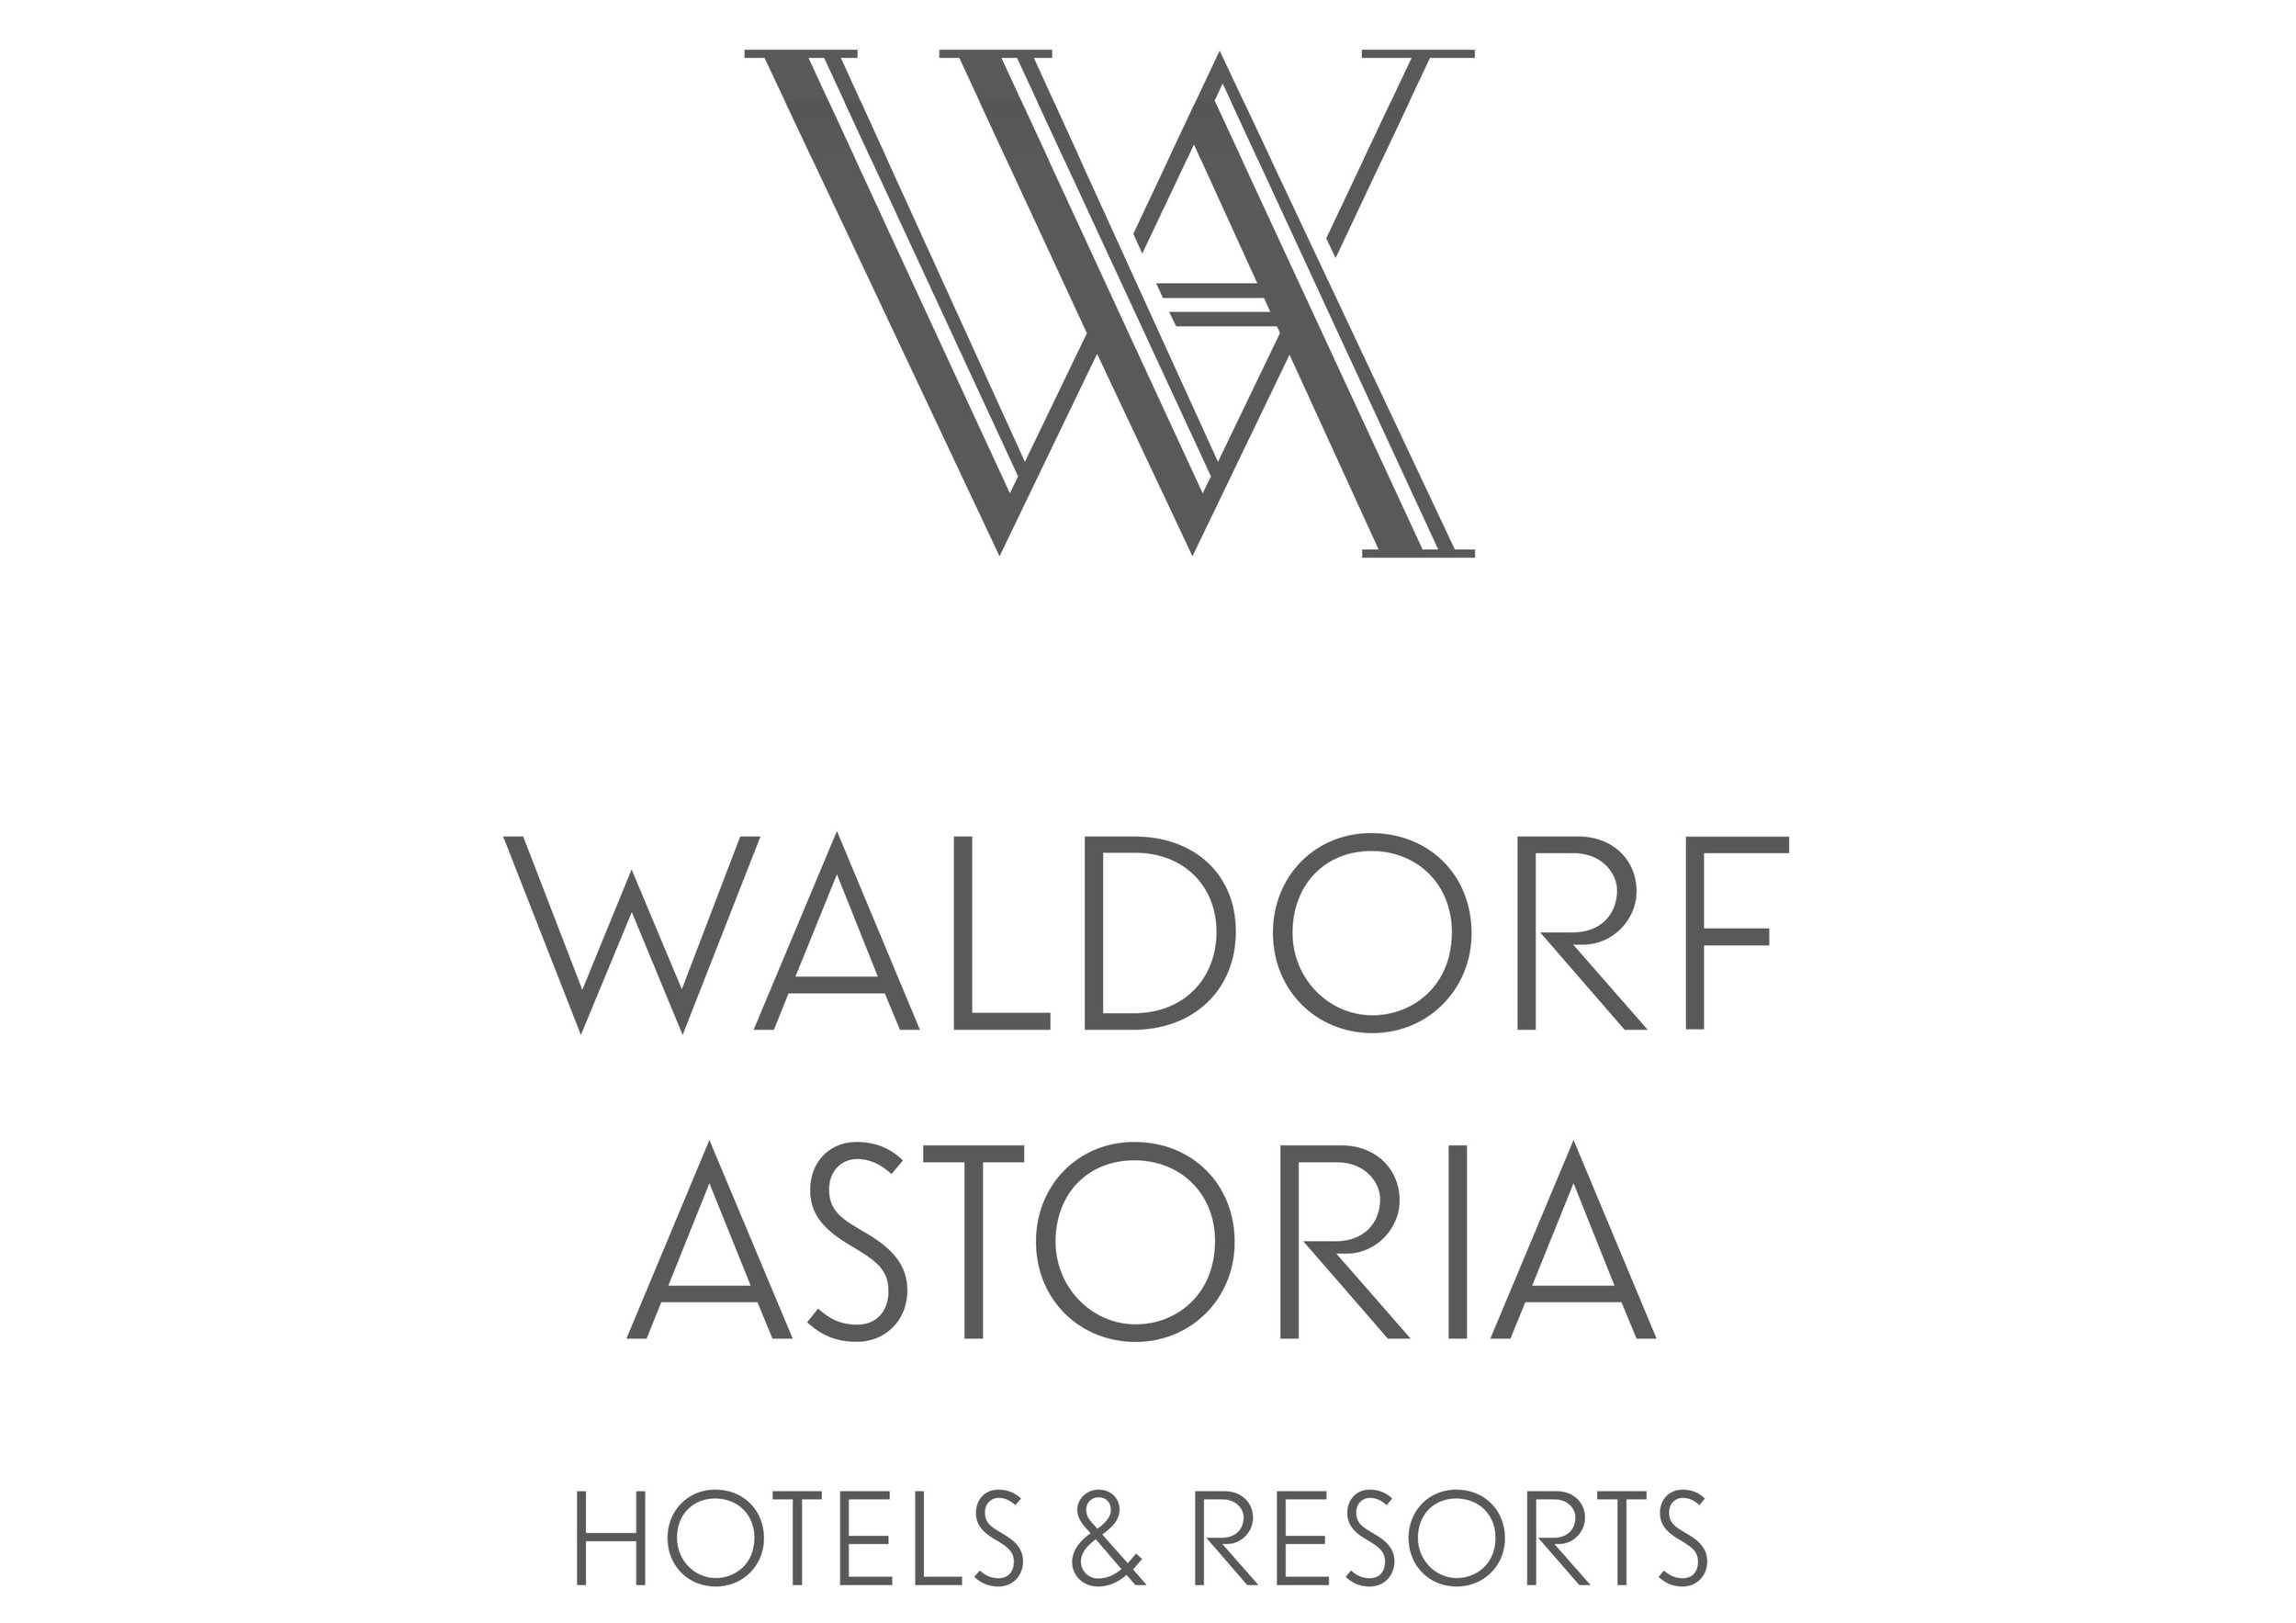  ..  Waldorf Astoria   